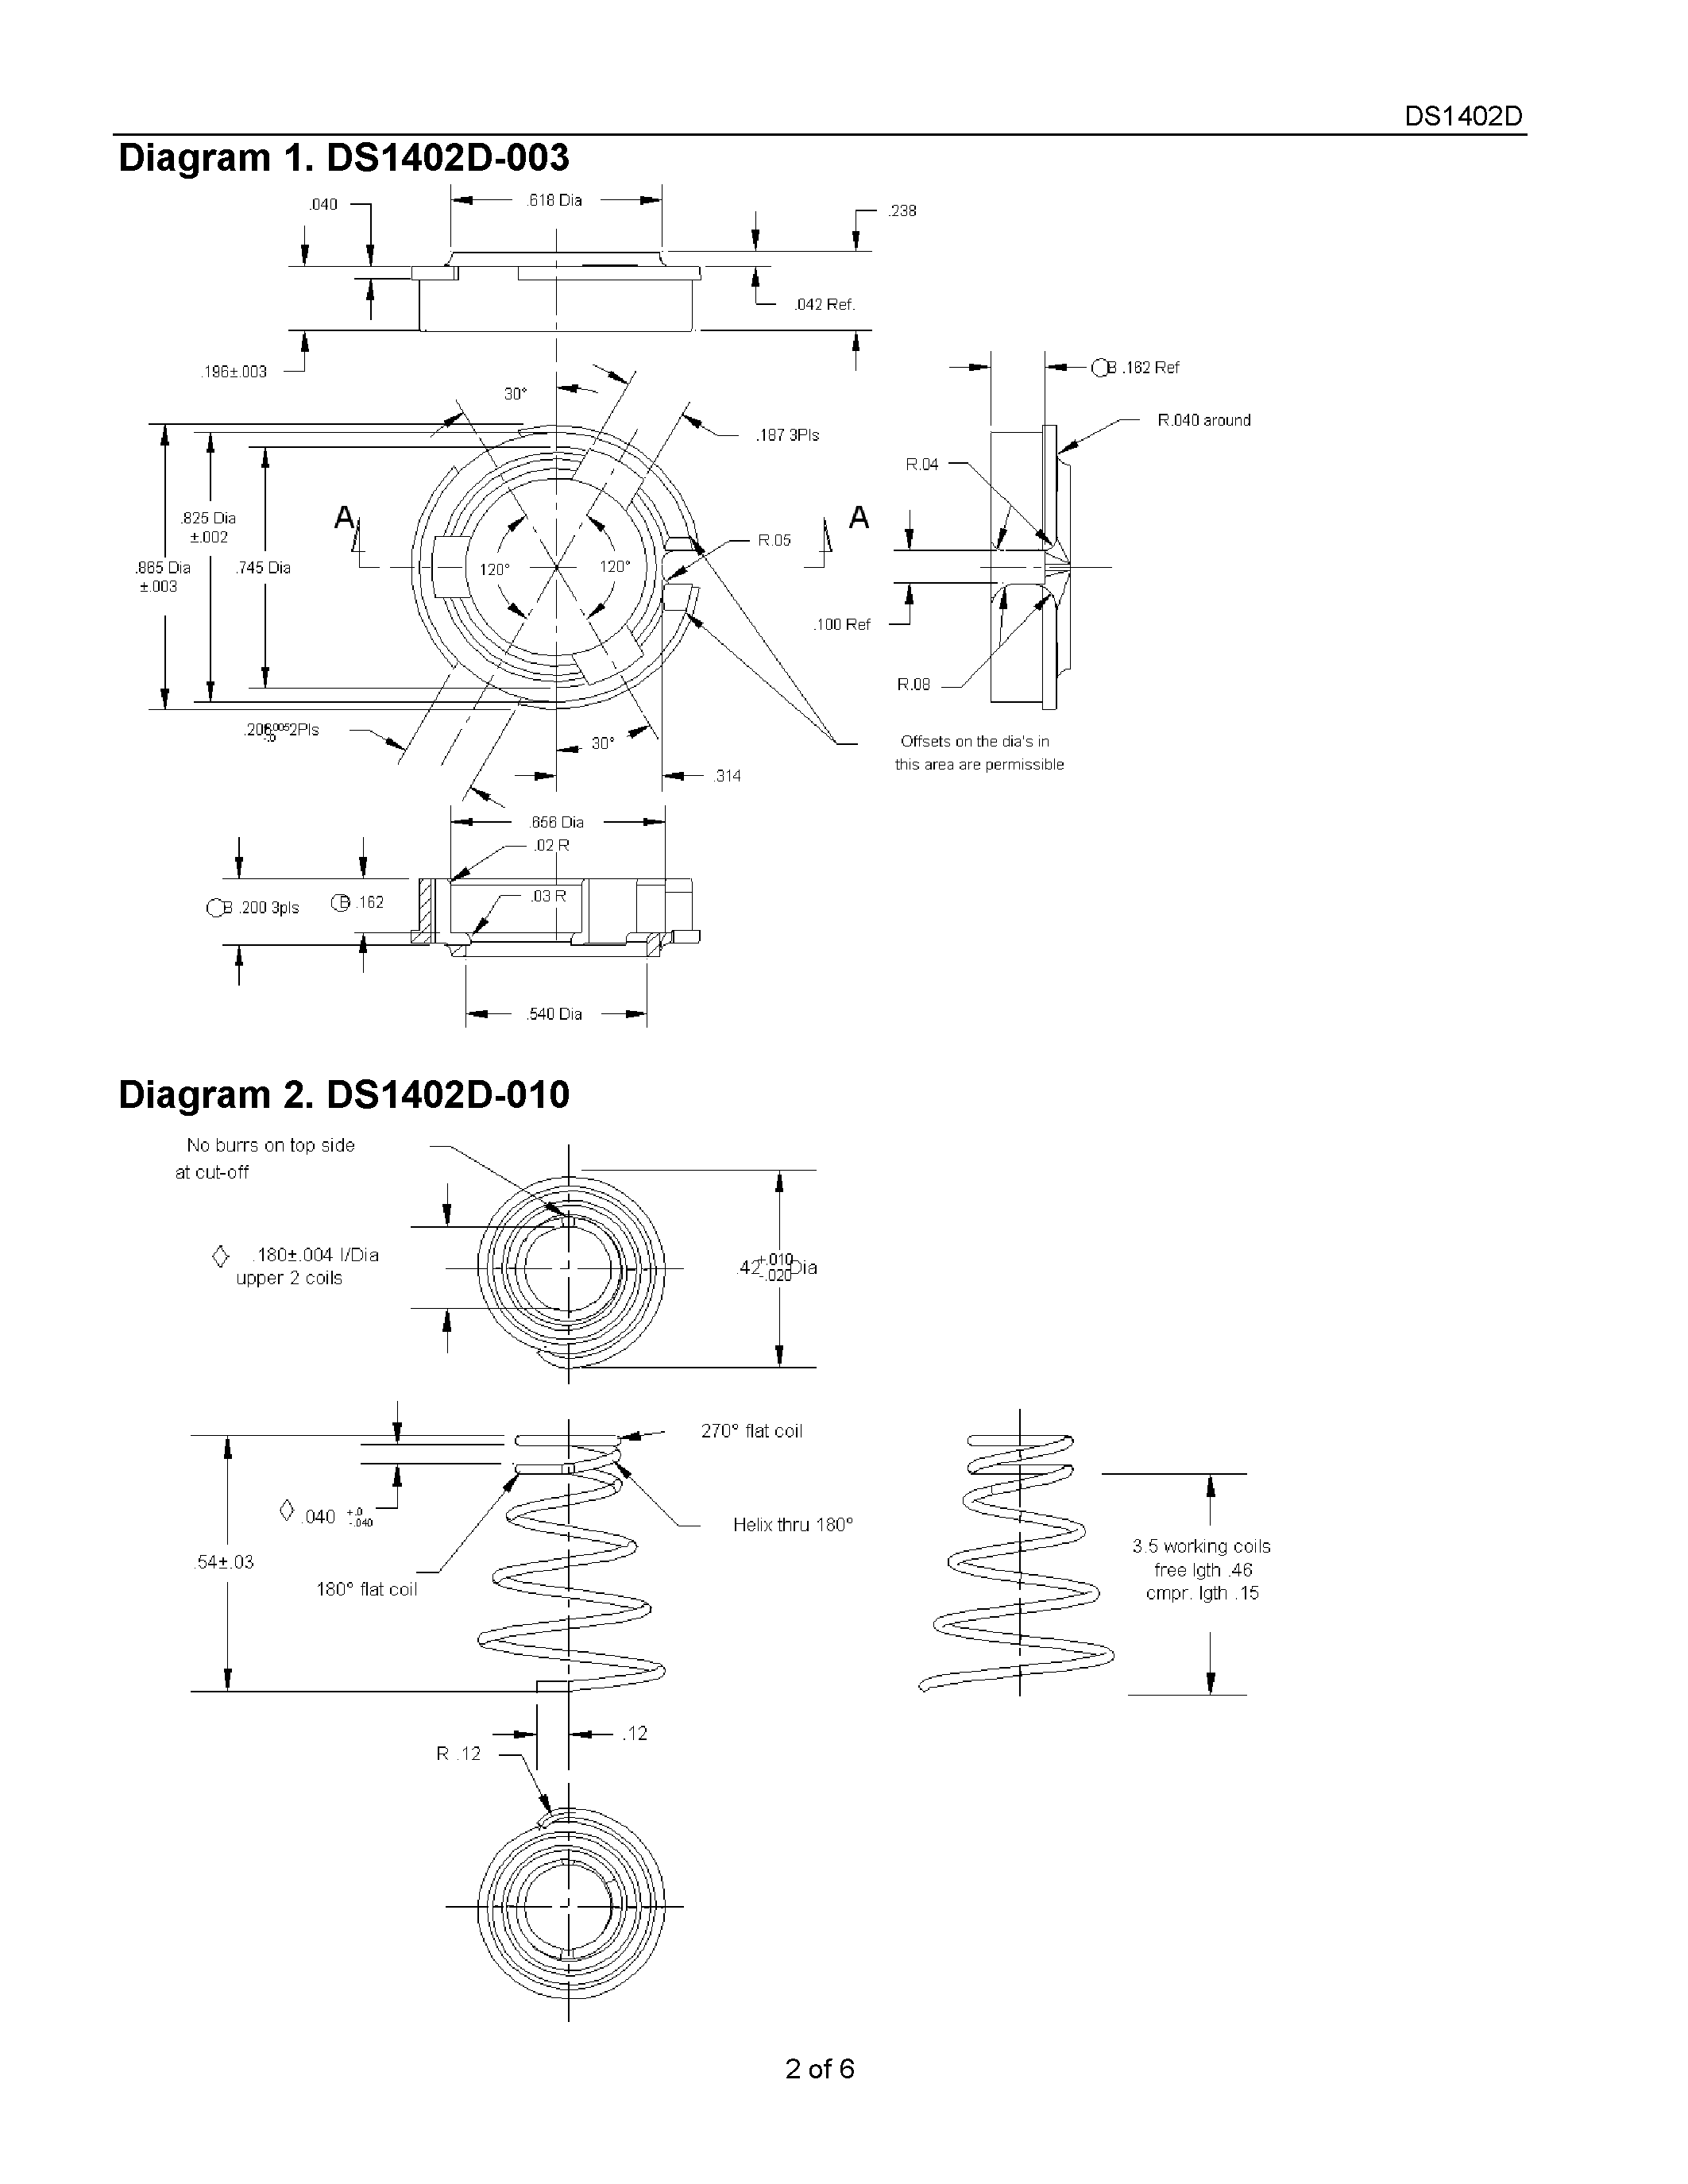 Даташит DS1402D-041 - iButton Probe Component Parts страница 2